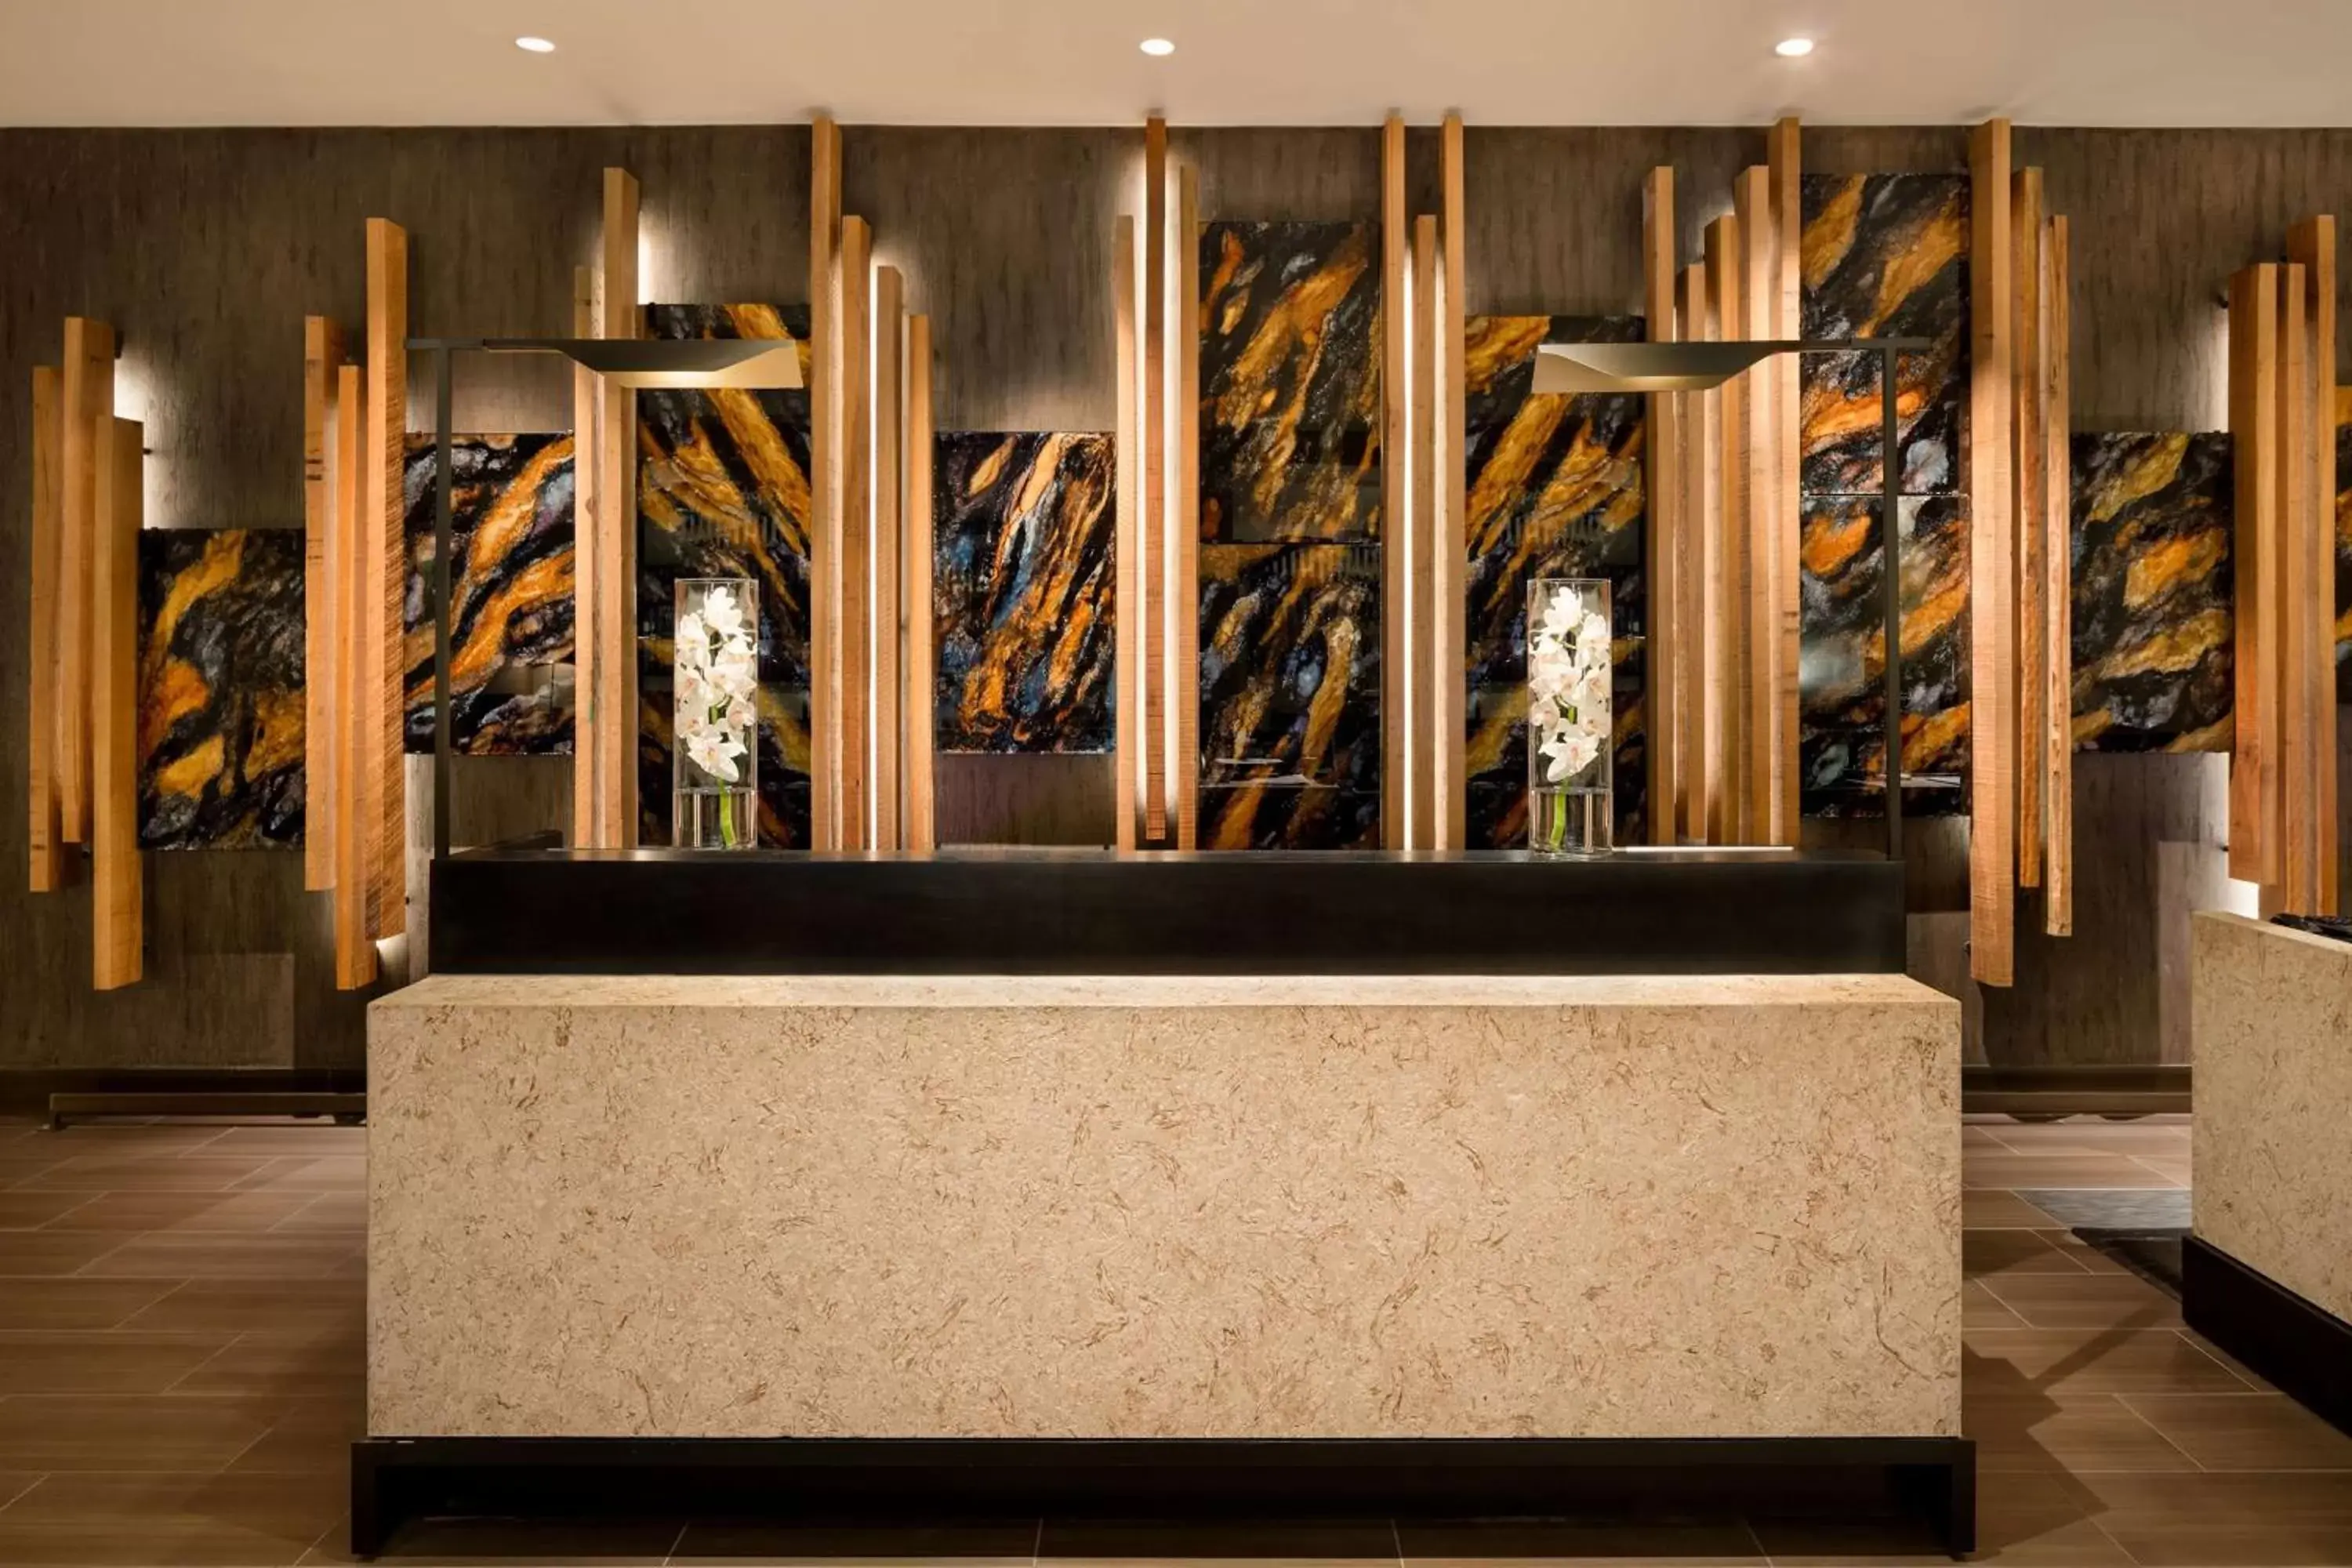 Lobby or reception, Lobby/Reception in Hilton Austin